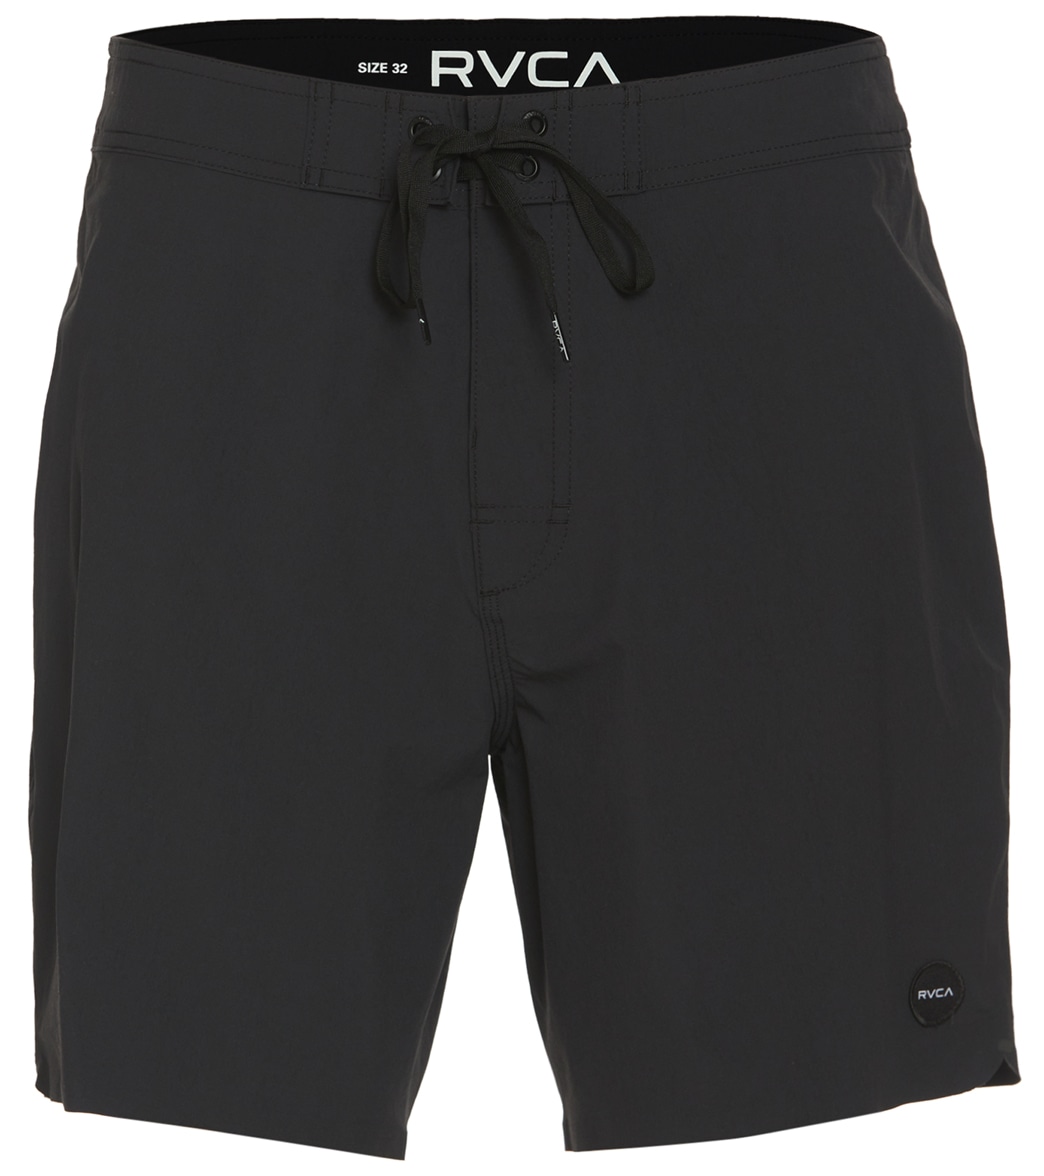 Rvca Men's 17 Anderson Board Shorts - Black 28 - Swimoutlet.com